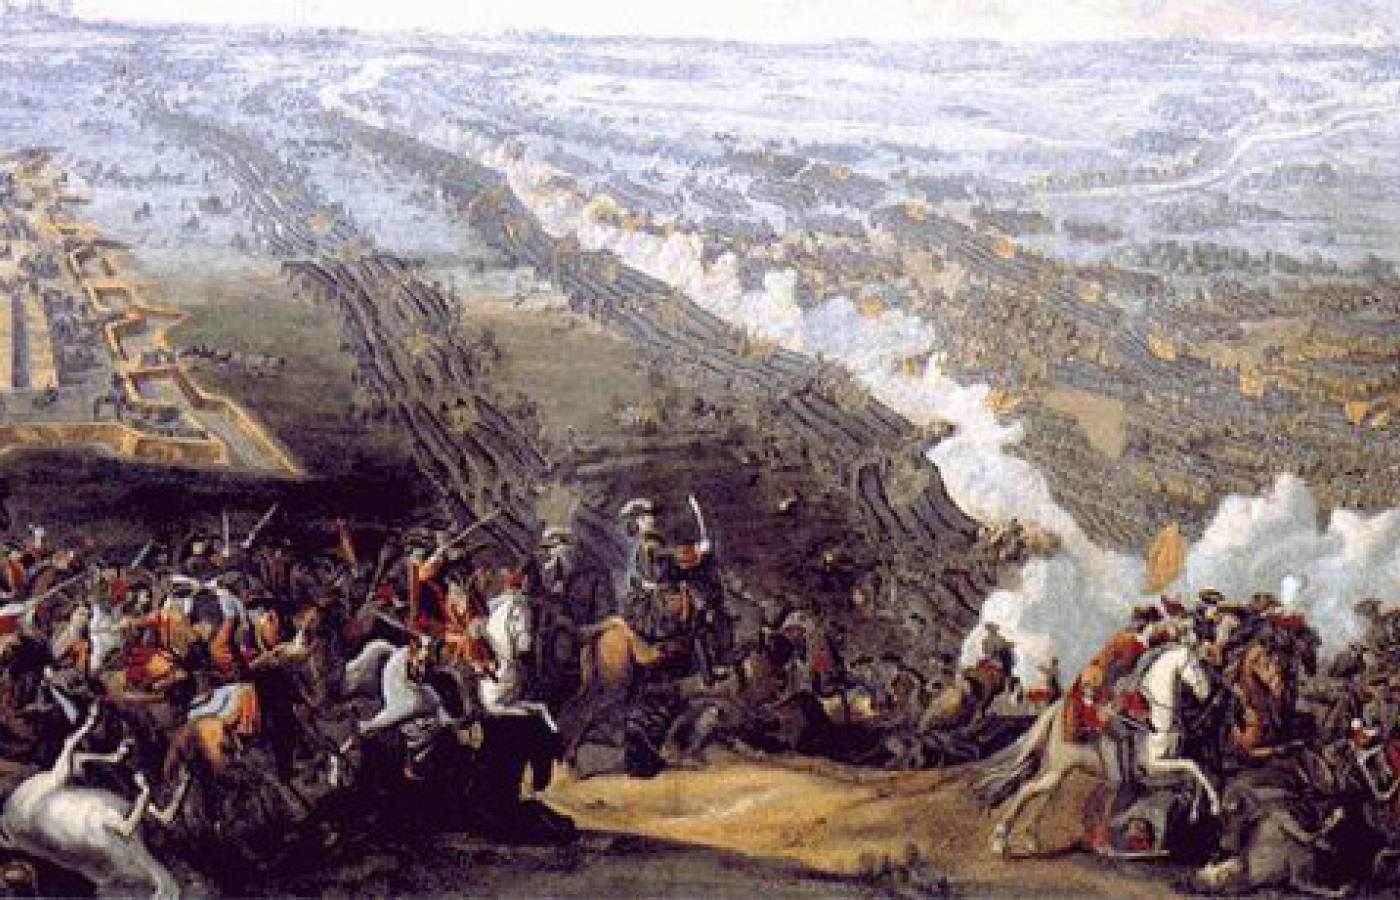 Bitwa pod Połtawą pędzla Denisa Martensa młodszego z 1726 r. Źródło: Wikipedia